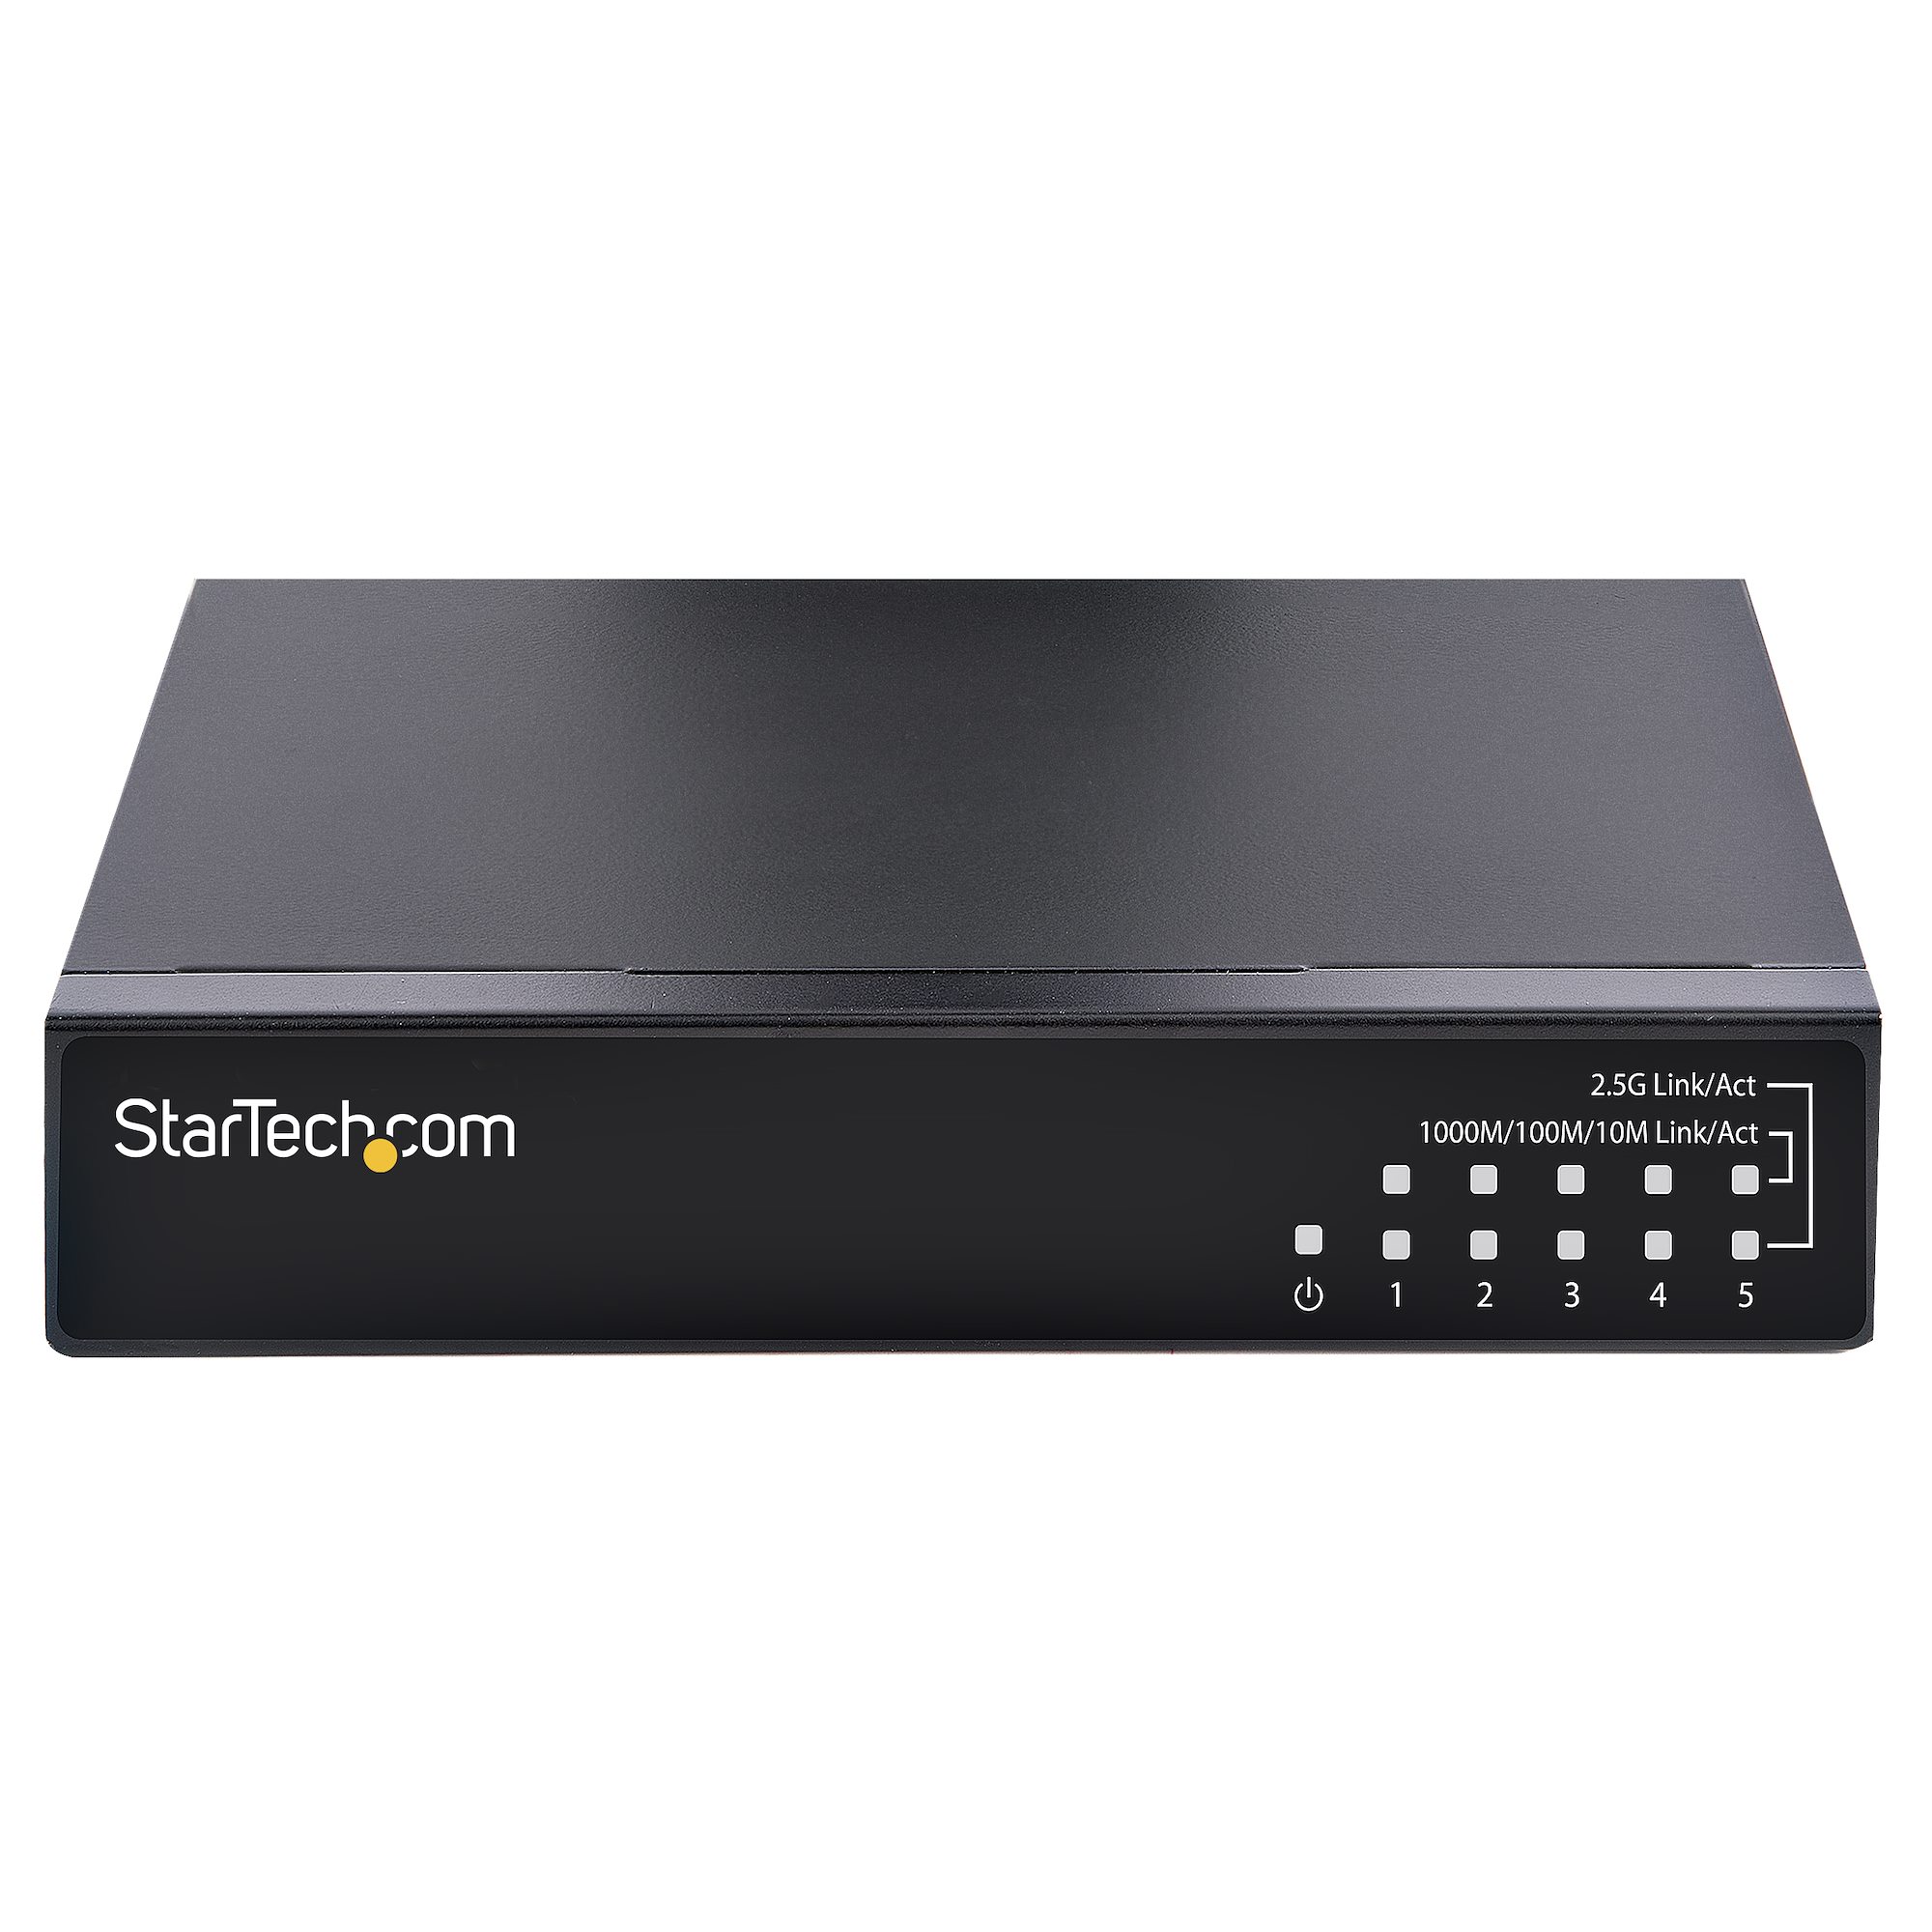 スターテック StarTech.com 2.5G対応アンマネージドスイッチ/5ポート